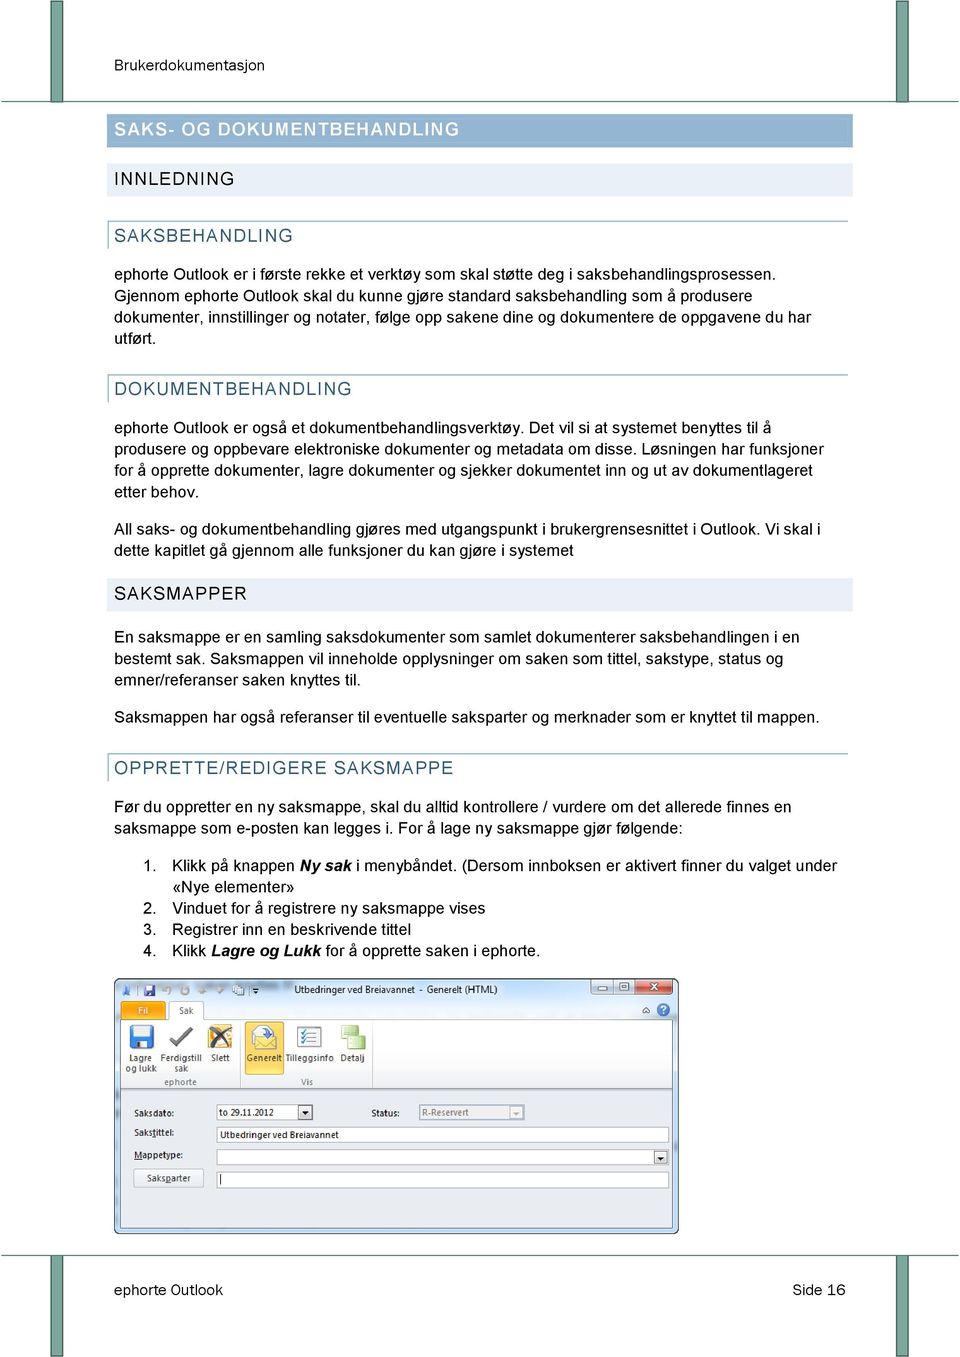 DOKUMENTBEHANDLING ephorte Outlook er også et dokumentbehandlingsverktøy. Det vil si at systemet benyttes til å produsere og oppbevare elektroniske dokumenter og metadata om disse.